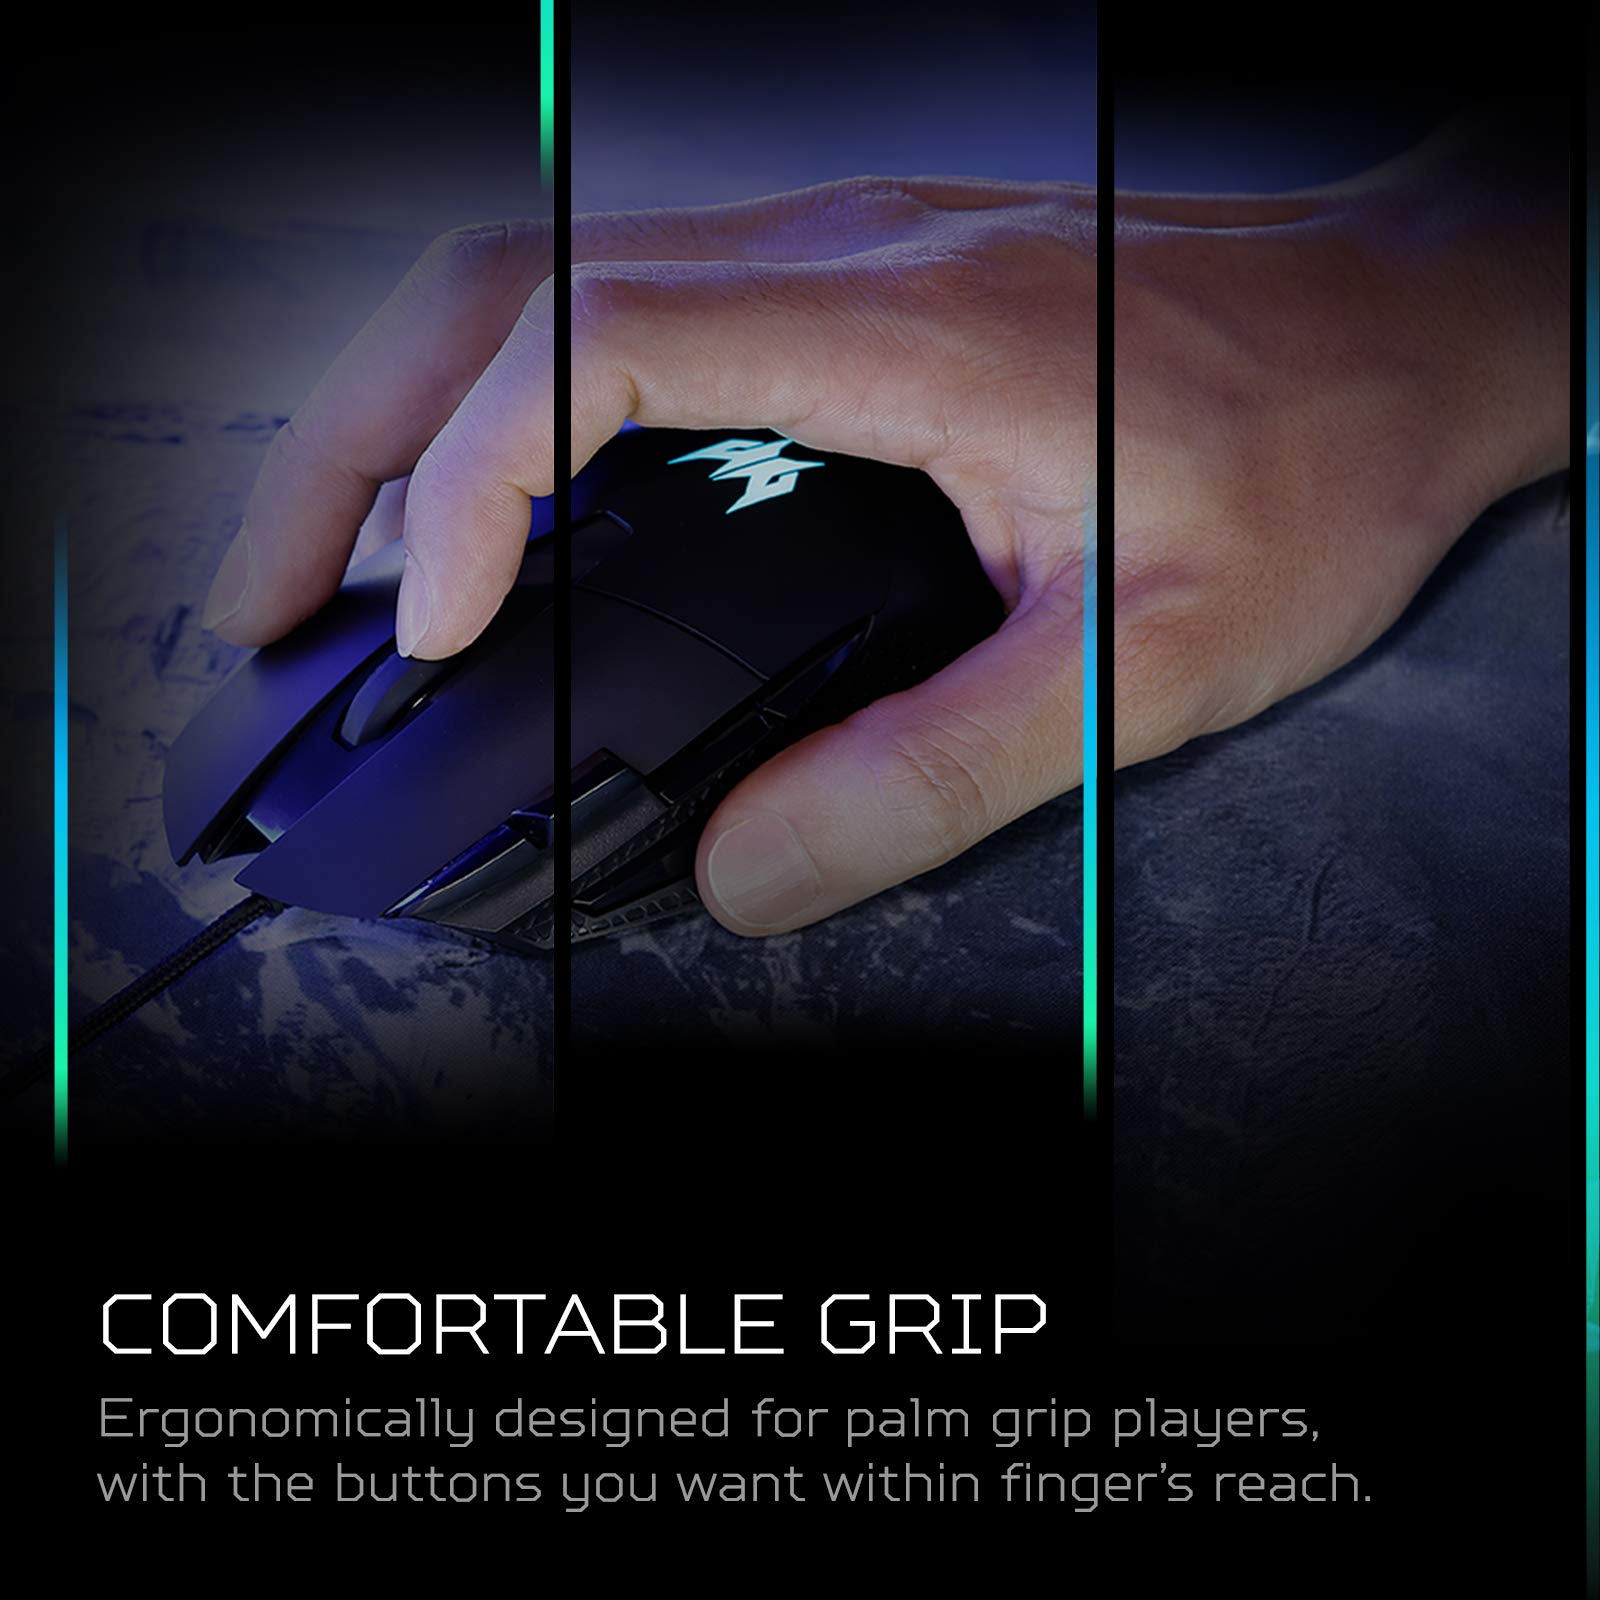 Acer Predator Cestus 315 Gaming Mouse with PixArt Sensor, Adjustable DPI & 8 Buttons Including Burst Fire